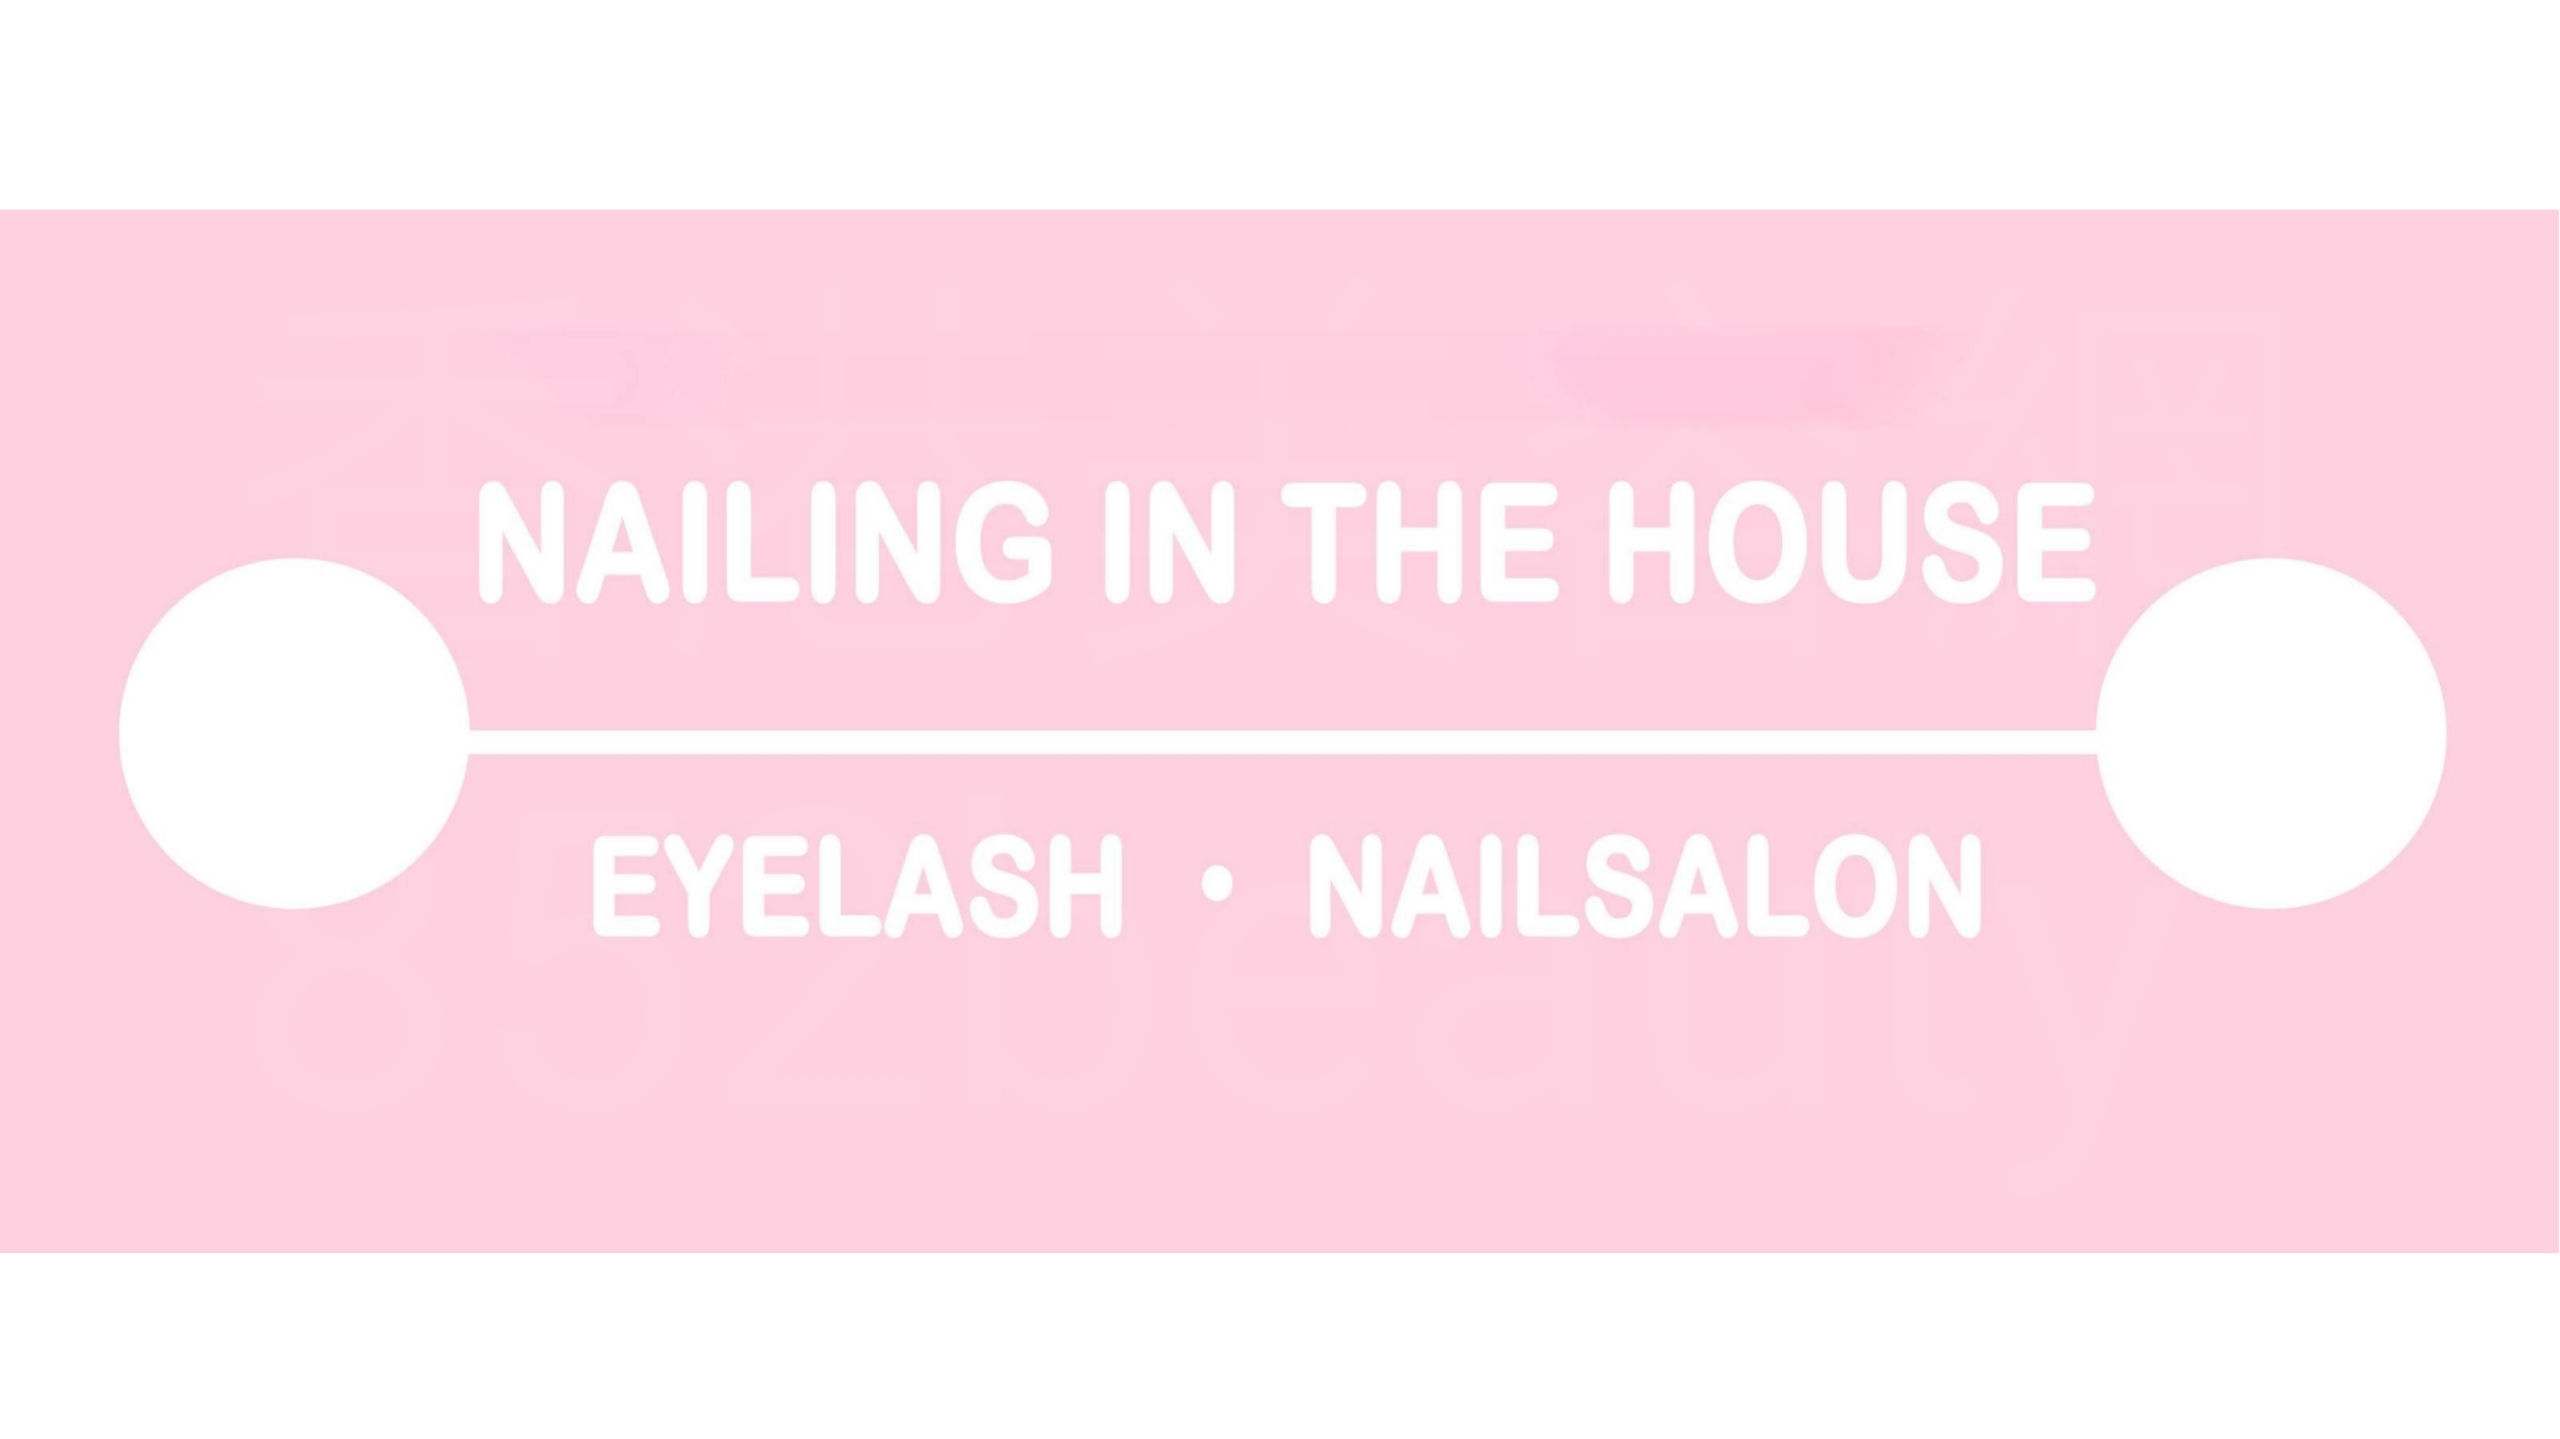 美容院 Beauty Salon: NAILING IN THE HOUSE